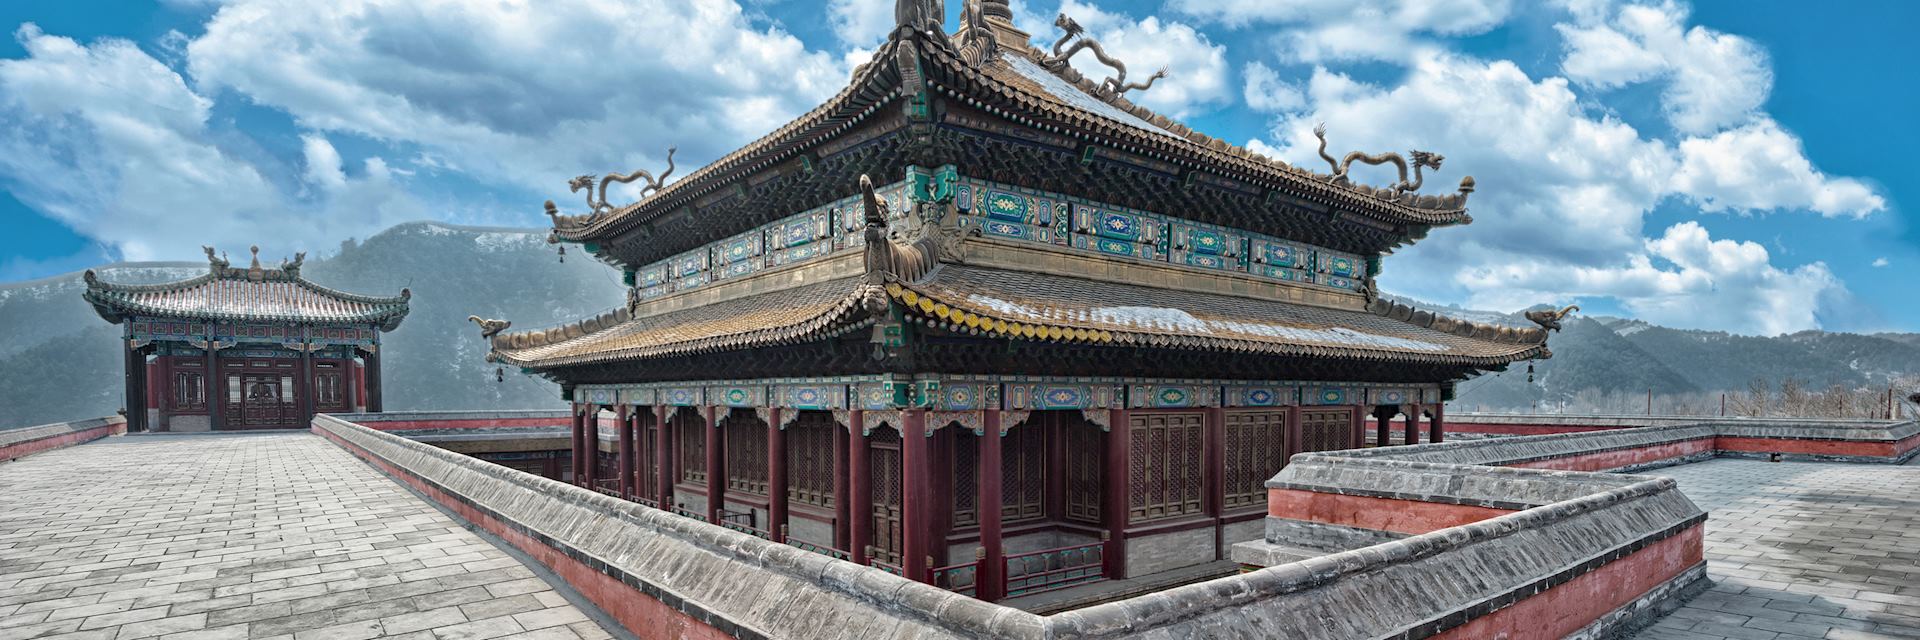 Chinese palace, Chengde